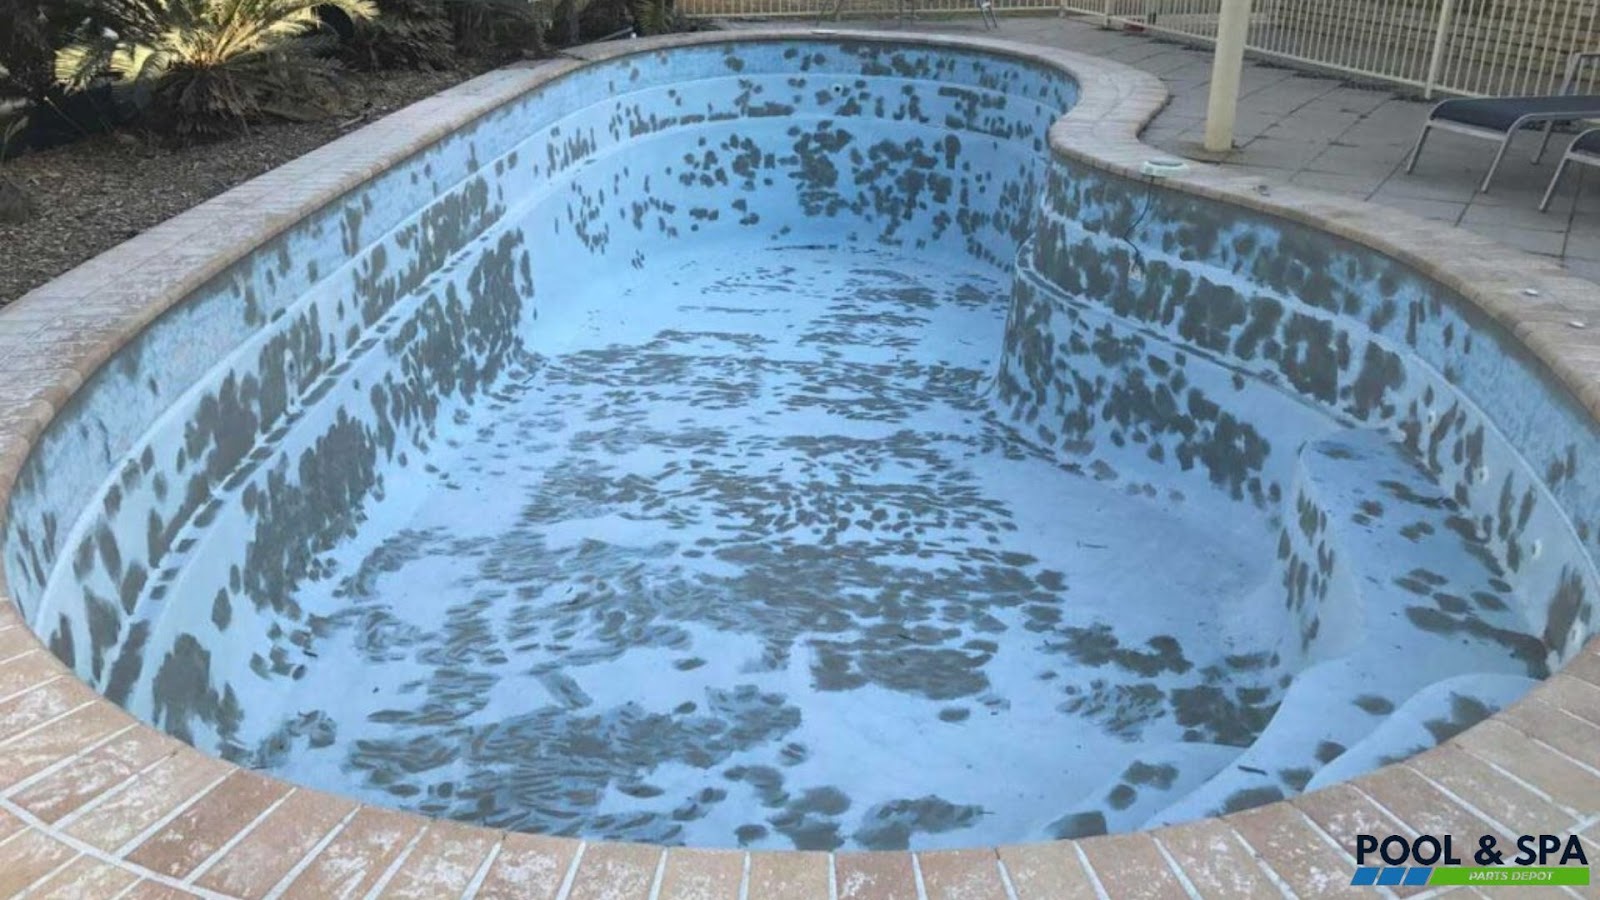 Damaged Pool Surface